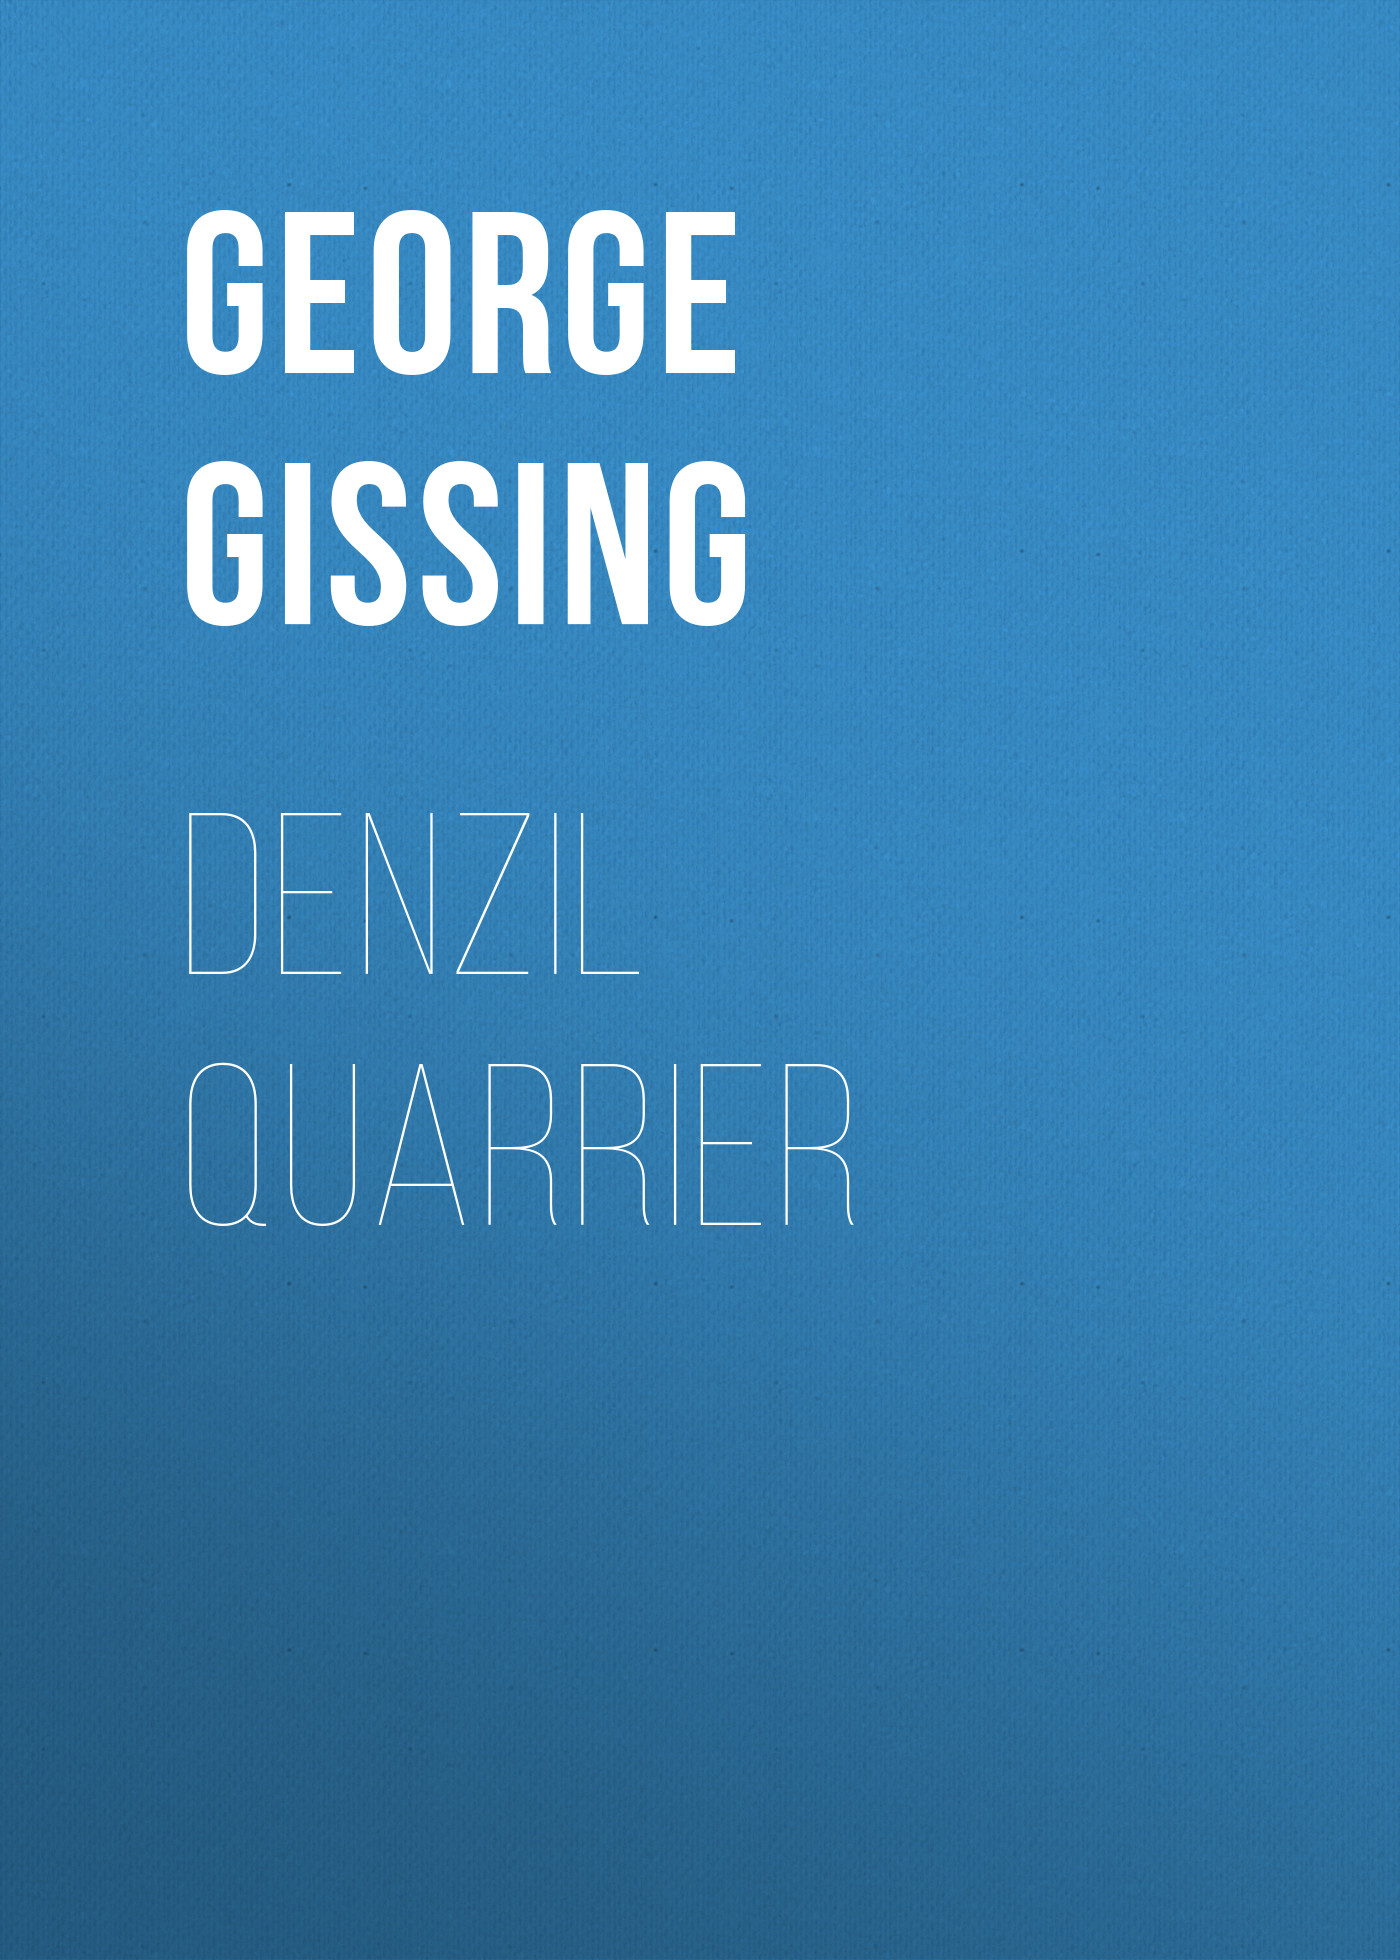 Книга Denzil Quarrier из серии , созданная George Gissing, может относится к жанру Зарубежная классика, Литература 19 века, Зарубежная старинная литература. Стоимость электронной книги Denzil Quarrier с идентификатором 38307017 составляет 0 руб.